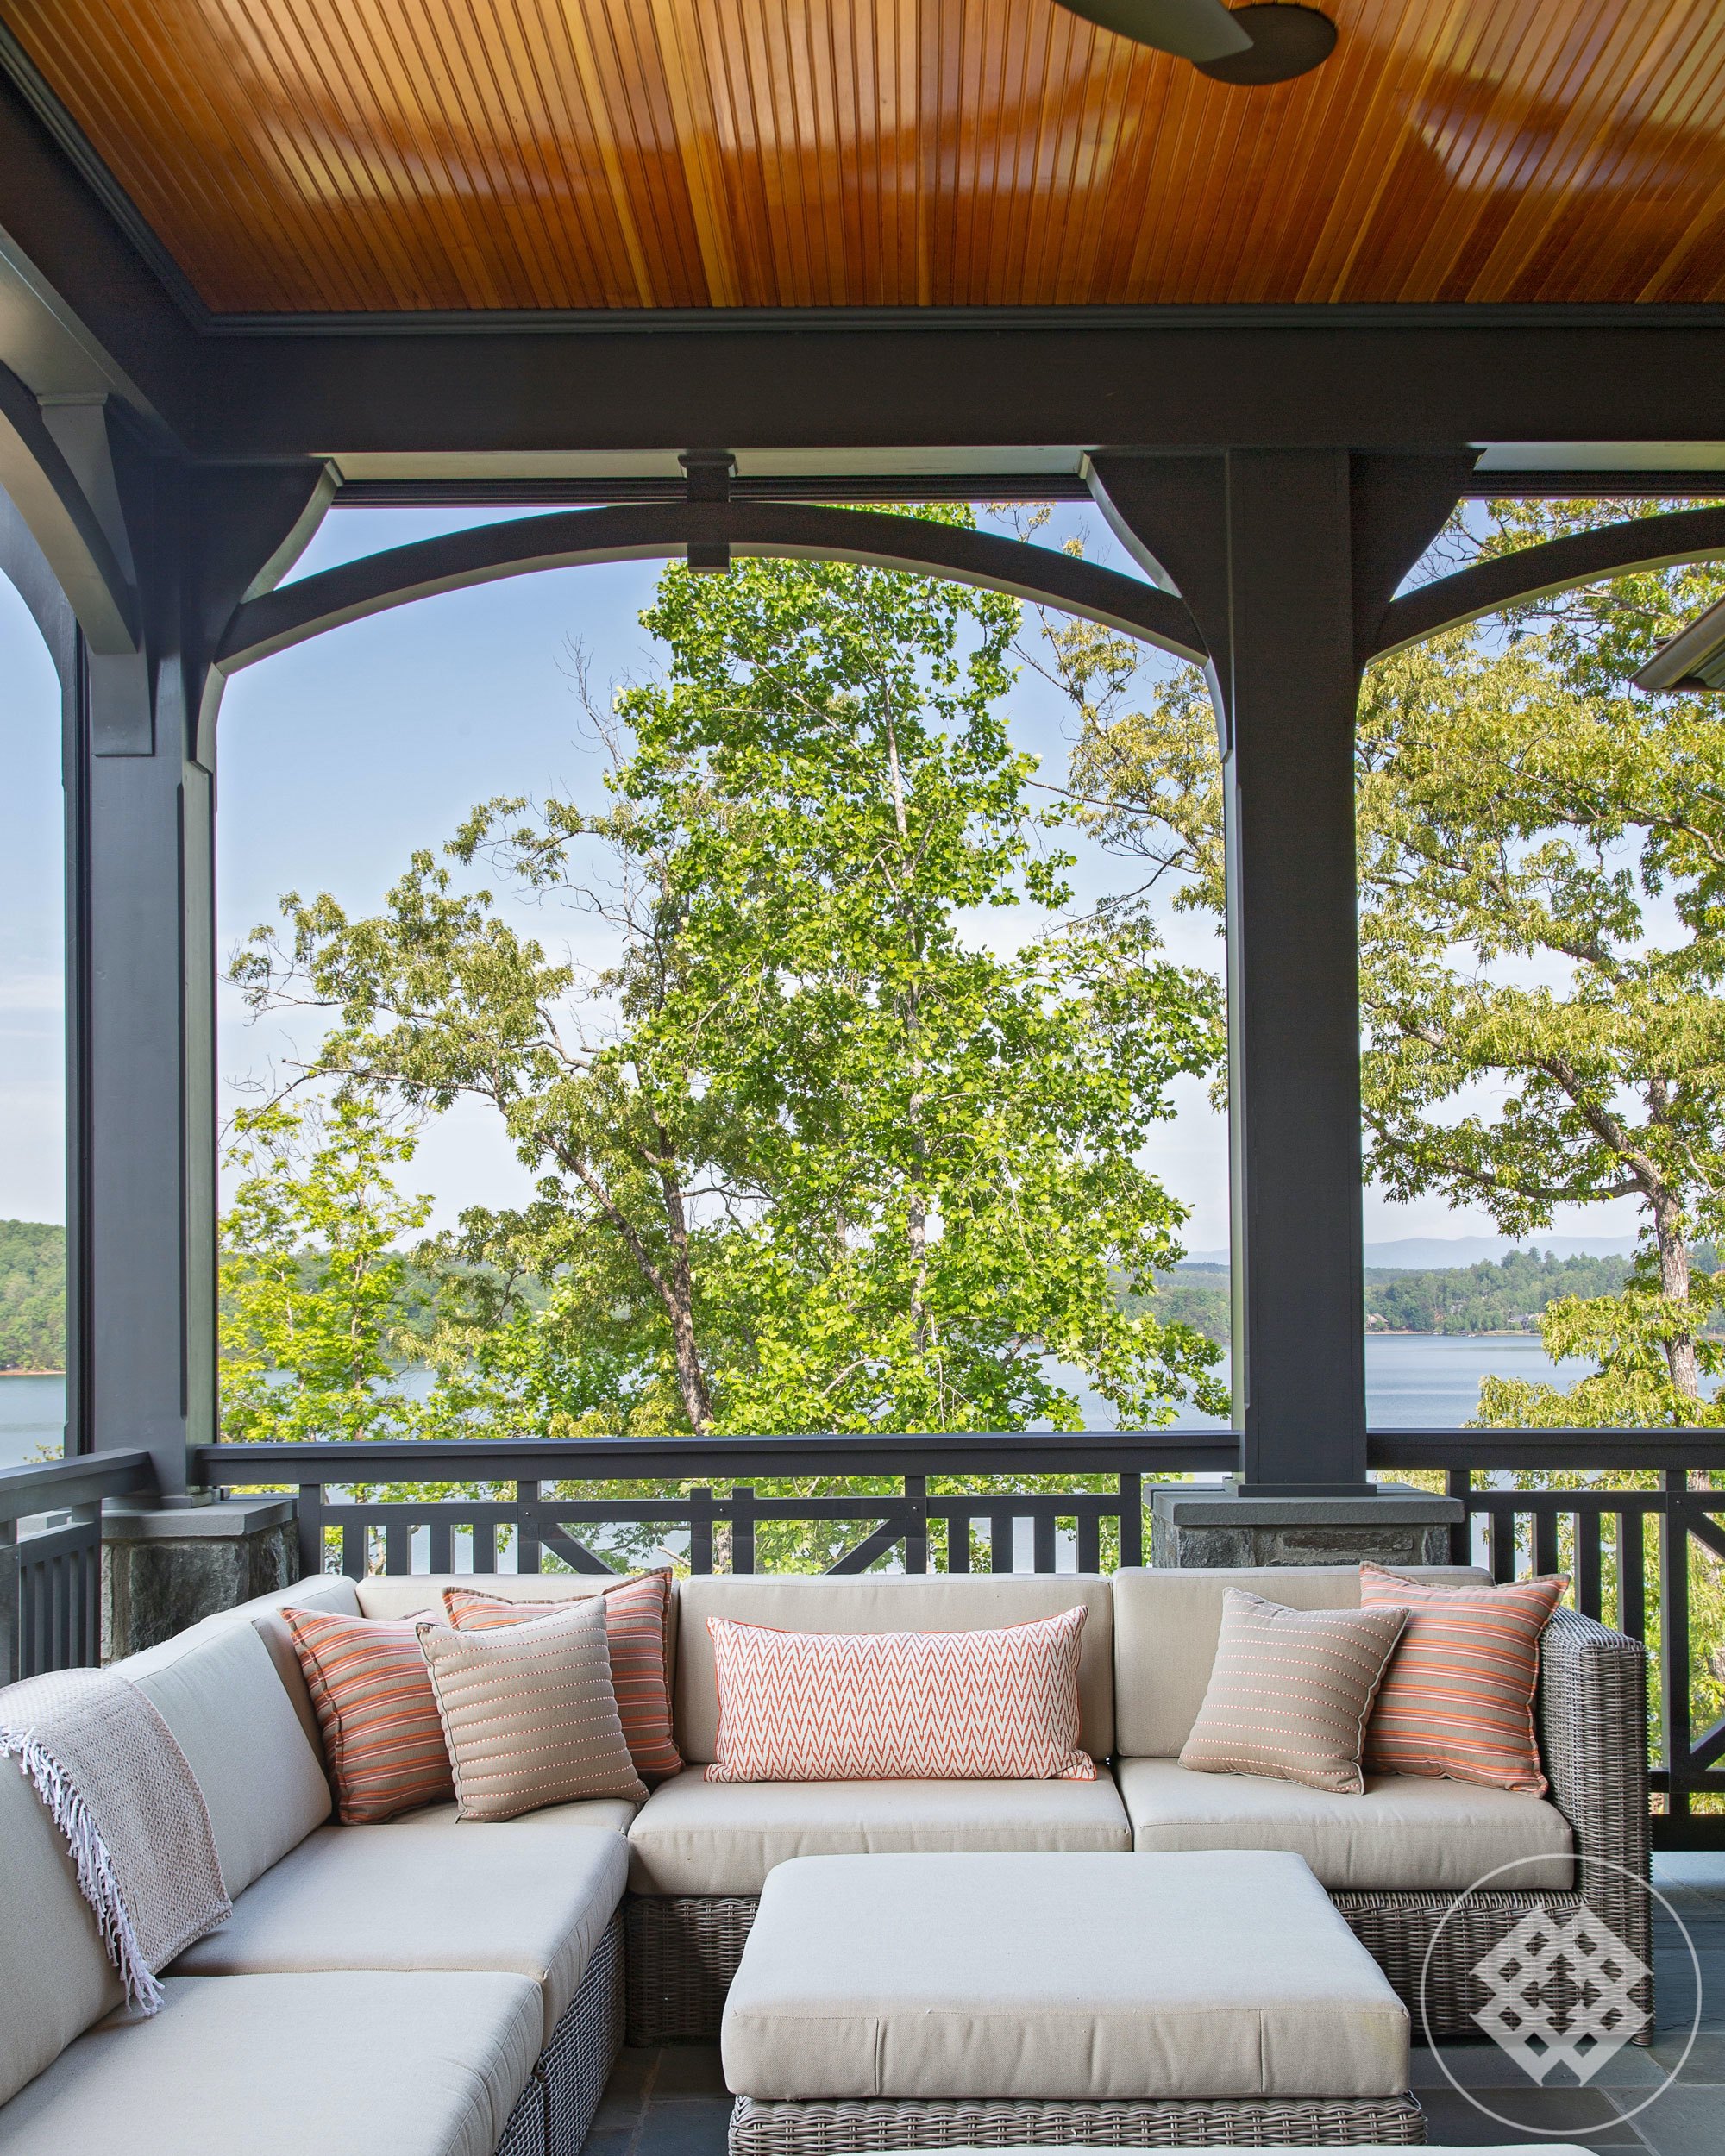 kkl-wicker-outdoor-seating-overlooking-lake-keowee.jpg